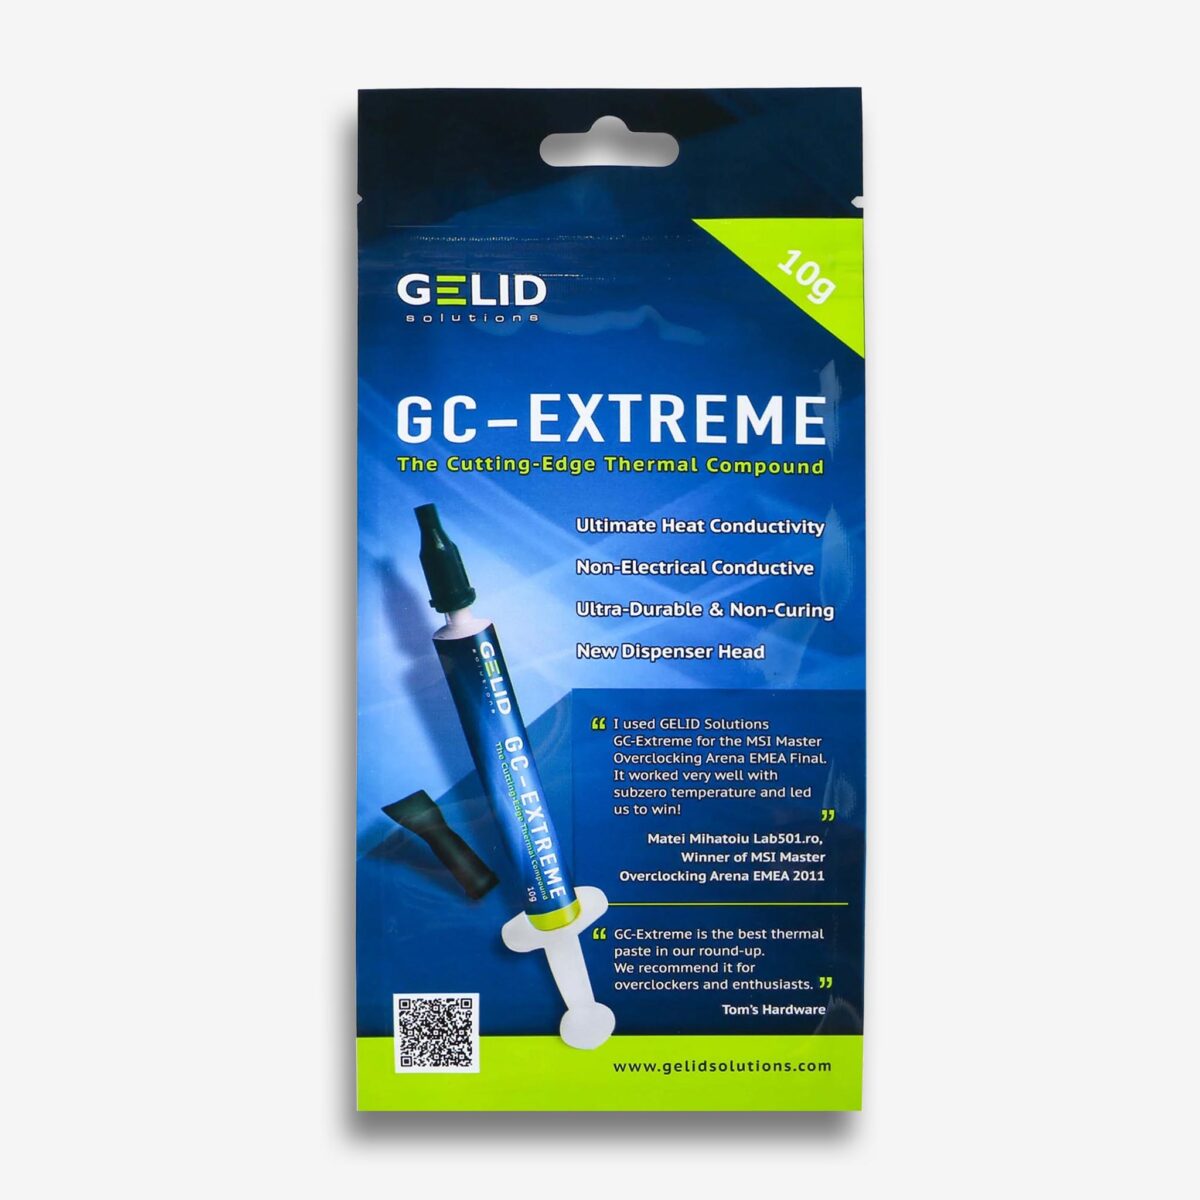 GELID GC-Extreme Hővezető Paszta 10g – 8.5W/mk [Sérült csomagolás]